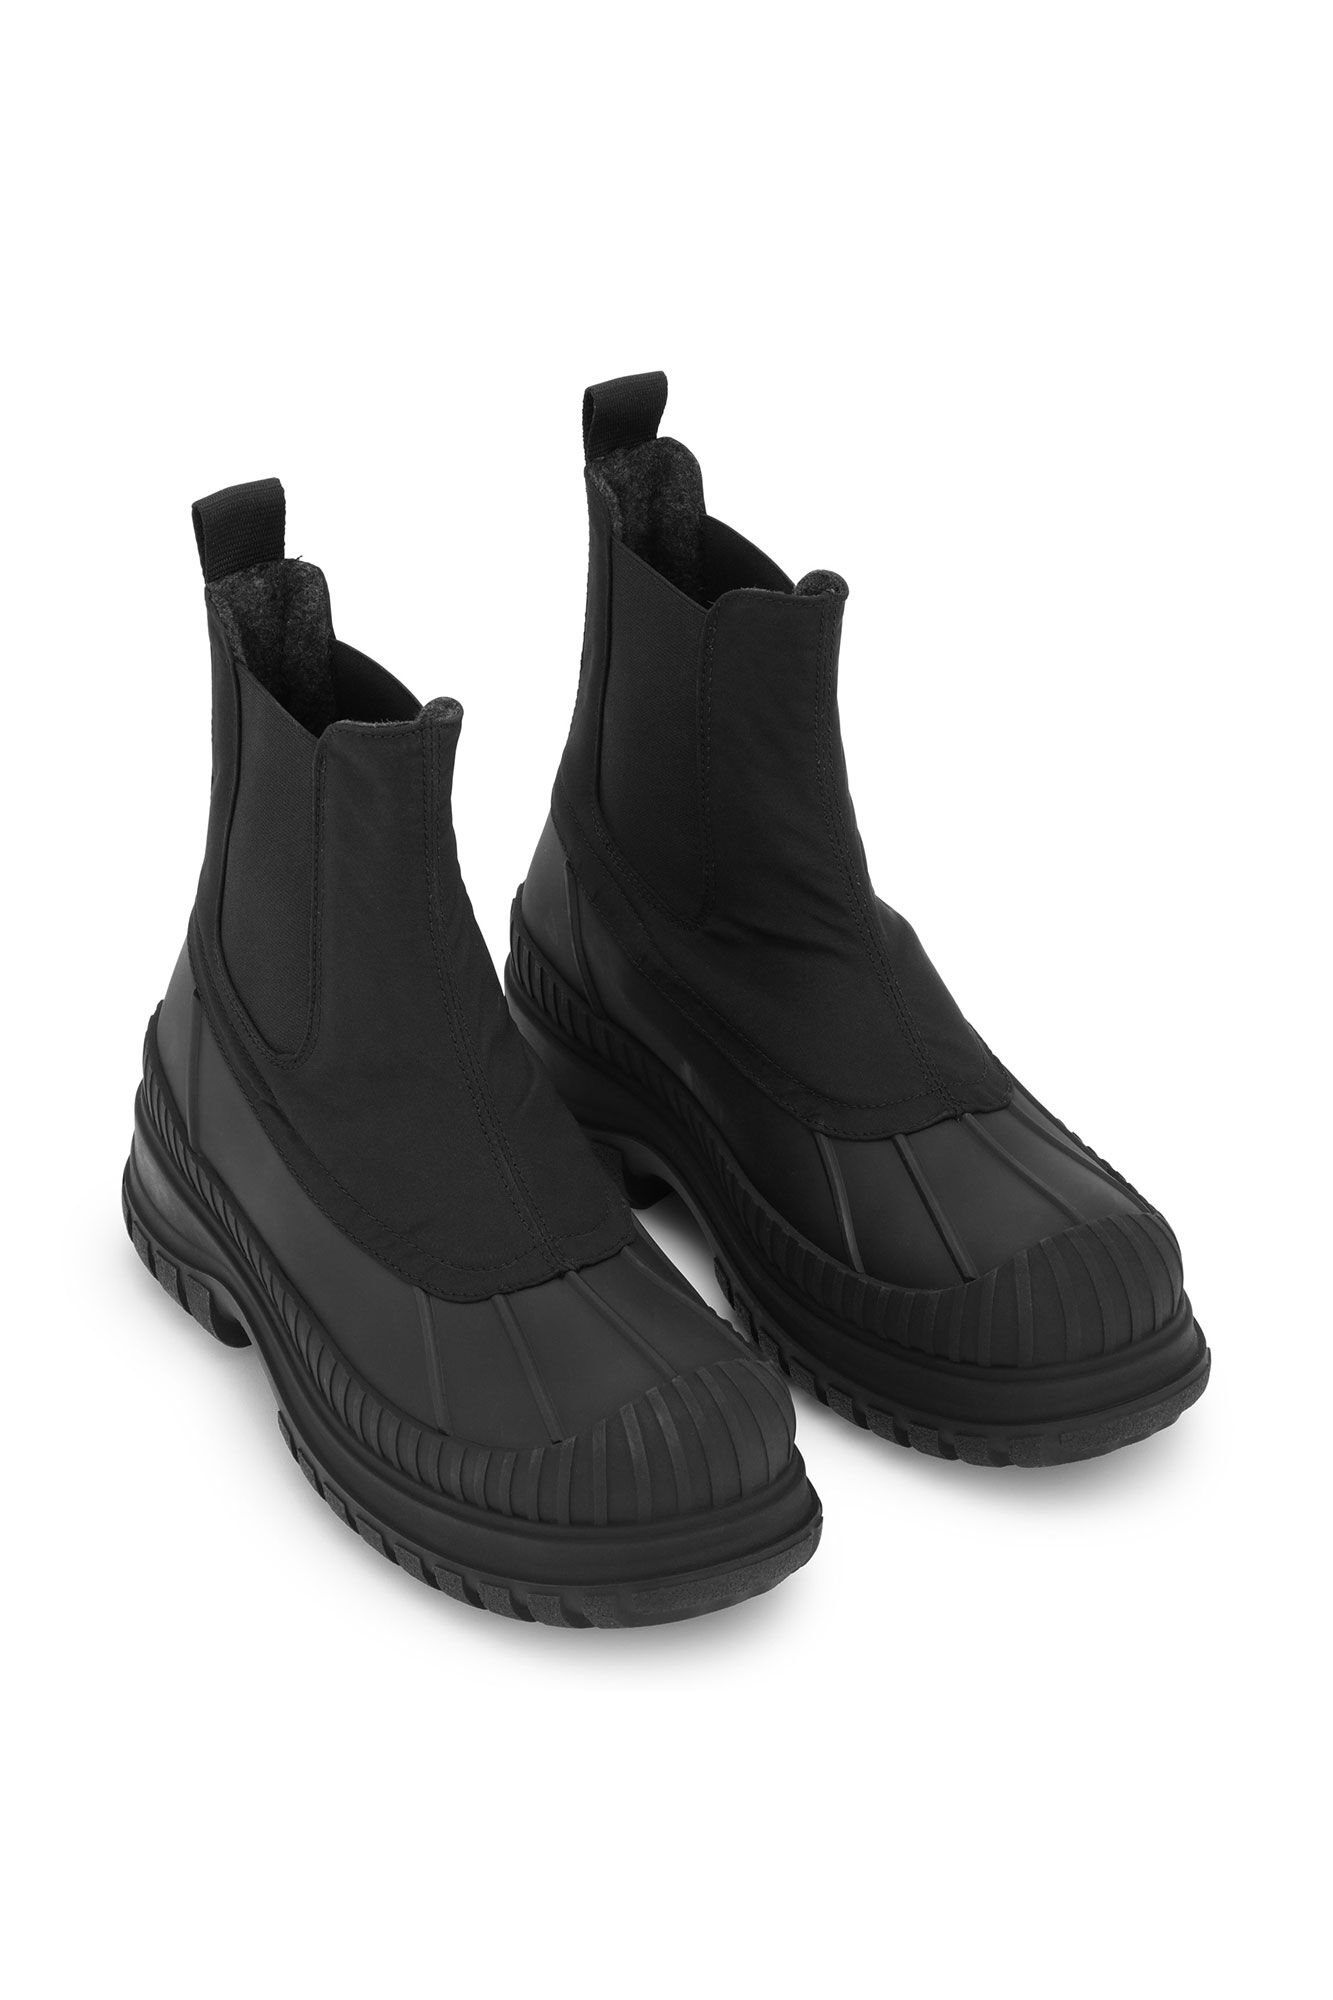 Black Outdoor Chelsea Boots